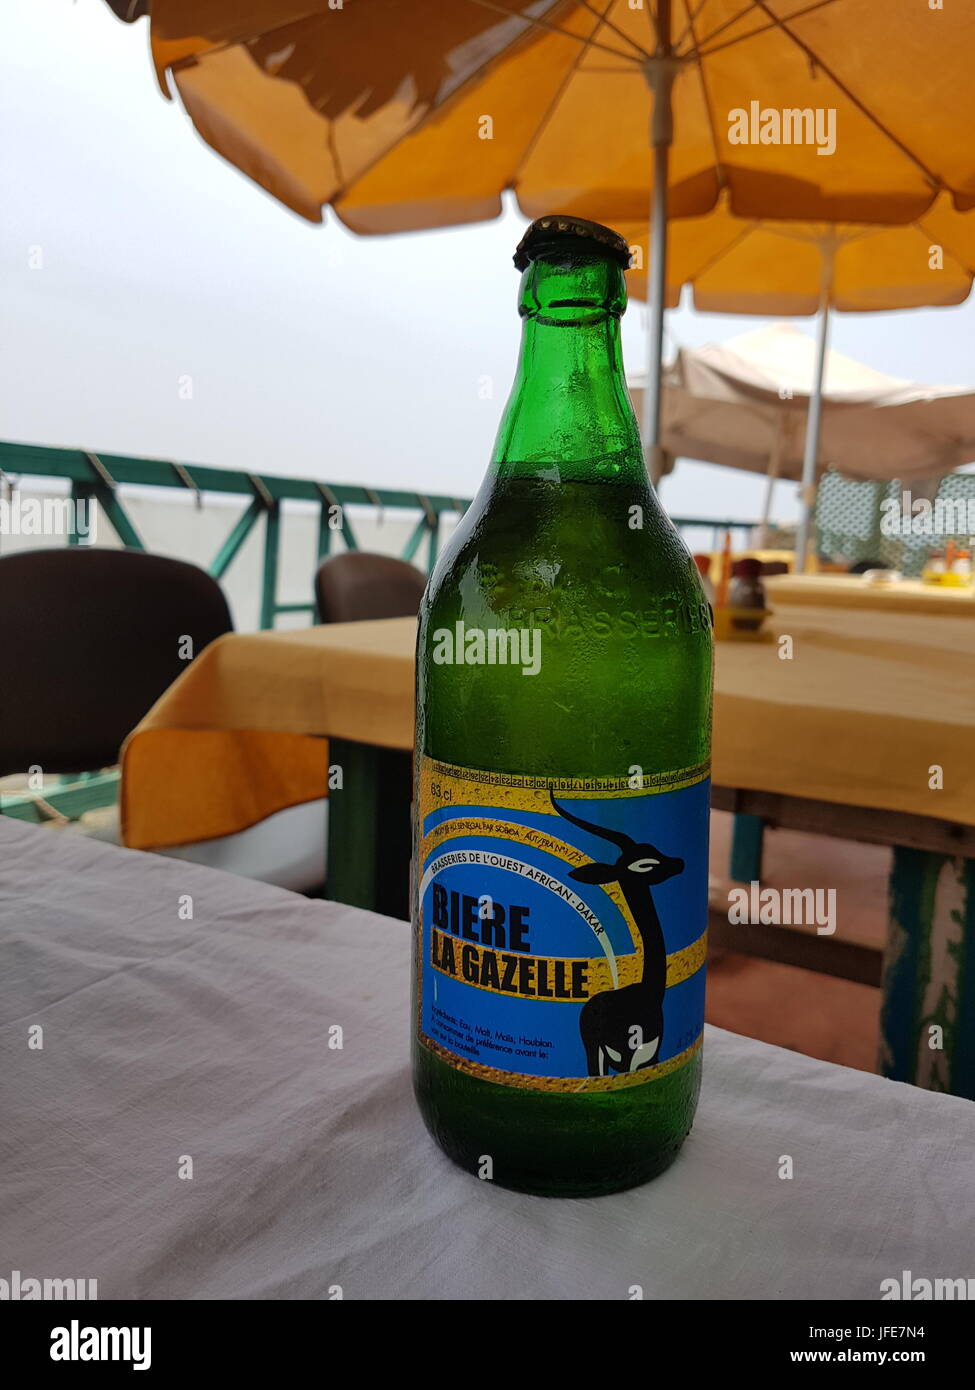 Flasche Biere La Gazelle, senegalesischen Bier Stockfotografie - Alamy